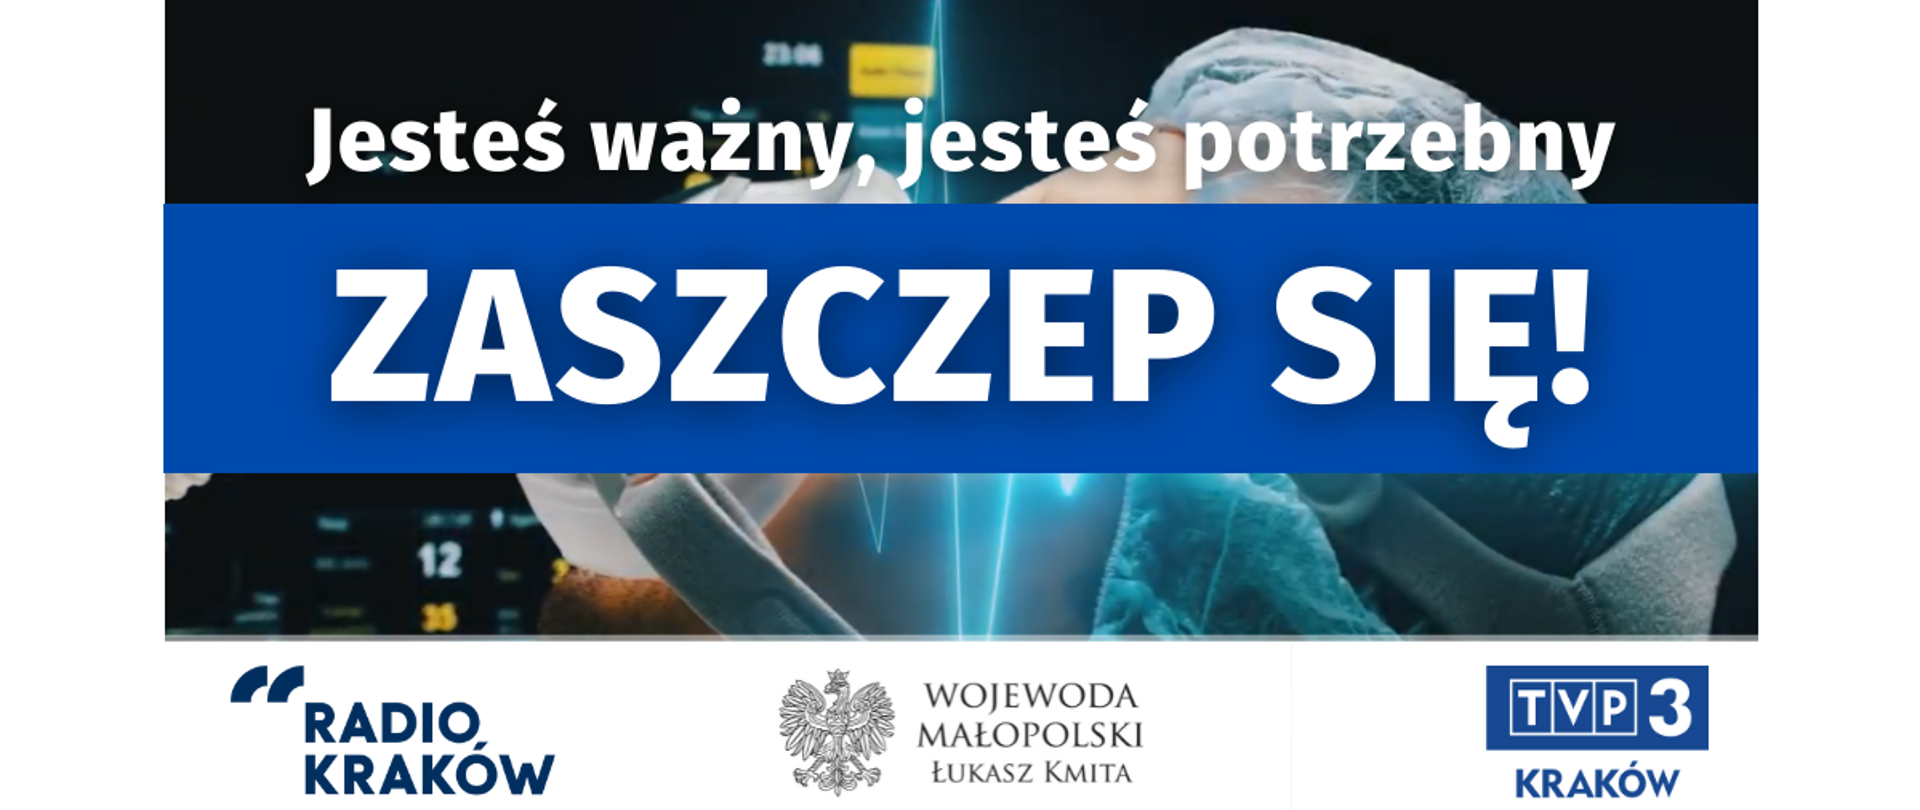 Infografika z hasłem "Jesteś ważny, jesteś potrzebny. Zaszczep się!", logotypy: Radia Kraków, Wojewody Małopolskiego, TVP3 Kraków